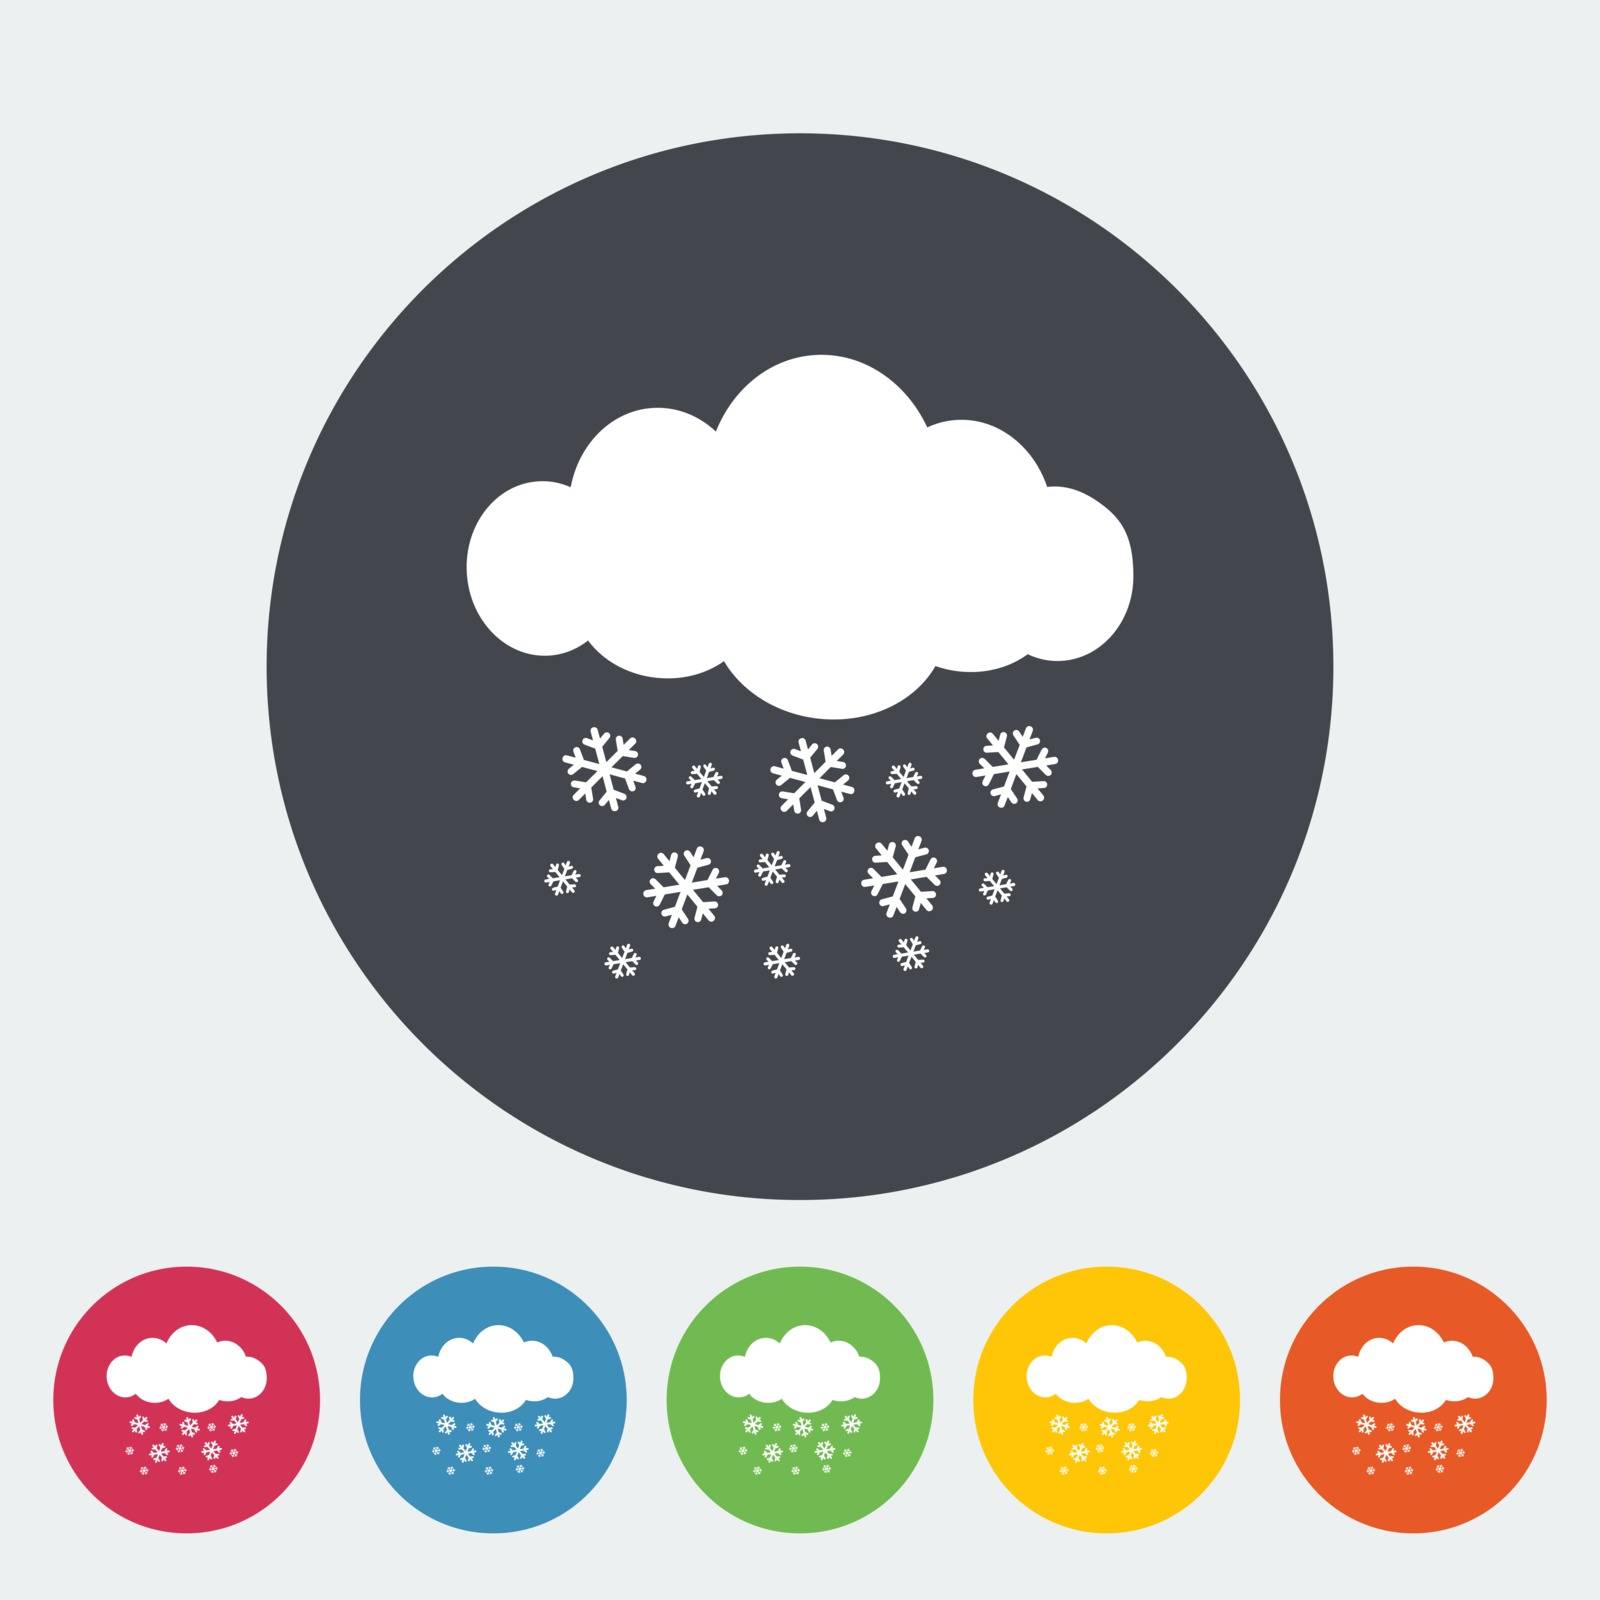 Snowfall single icon. by smoki